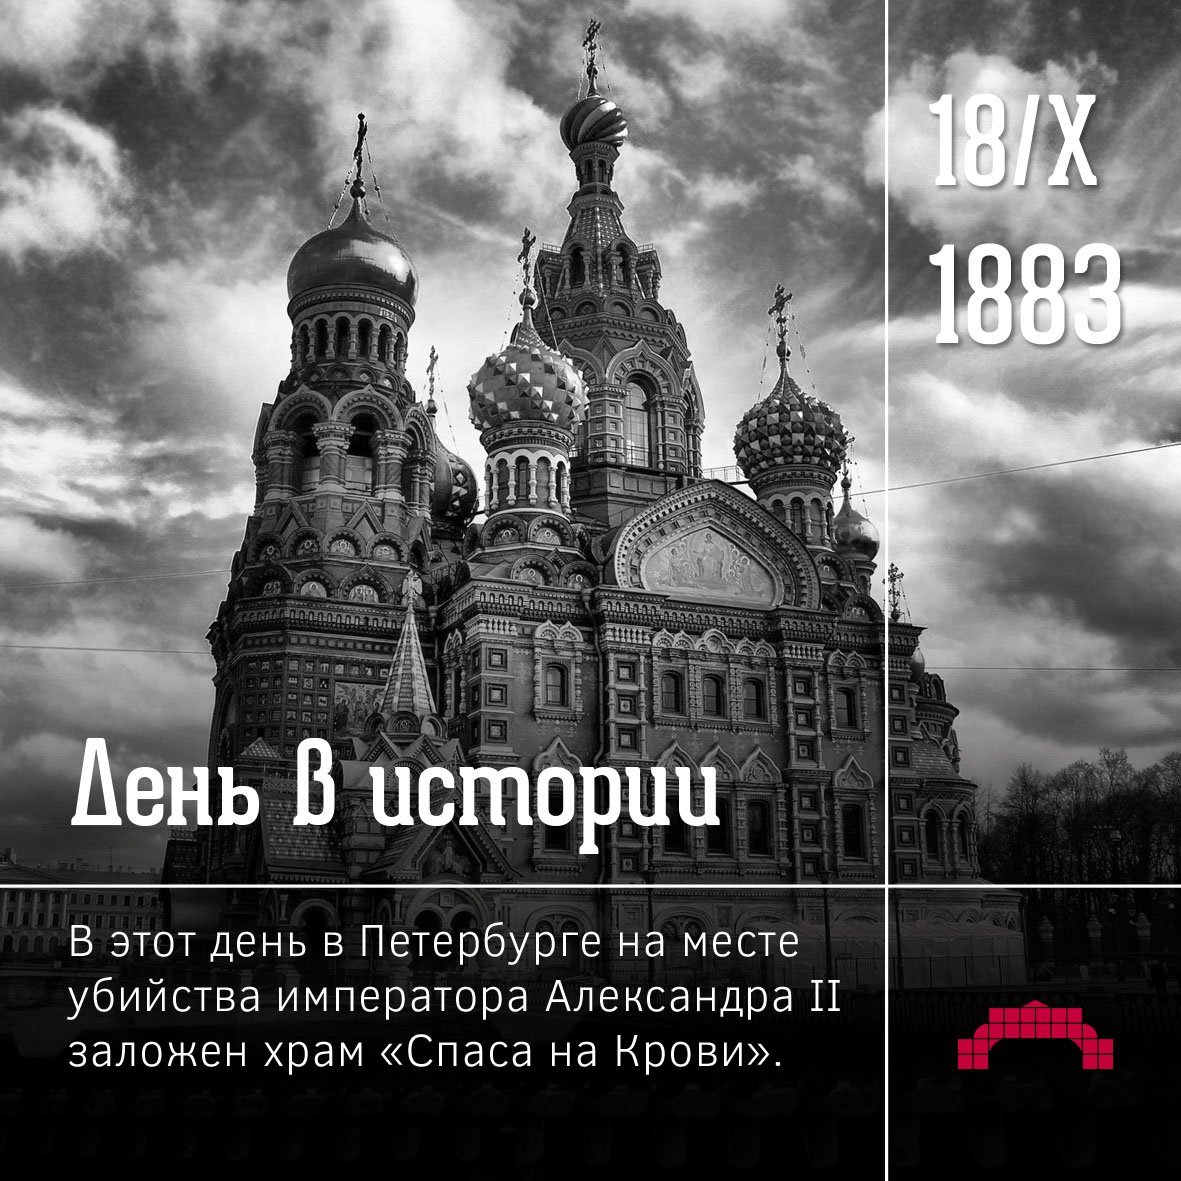 18 октября какого года. 18 Октября 1883 года в Петербурге был заложен храм «Спаса на крови»..